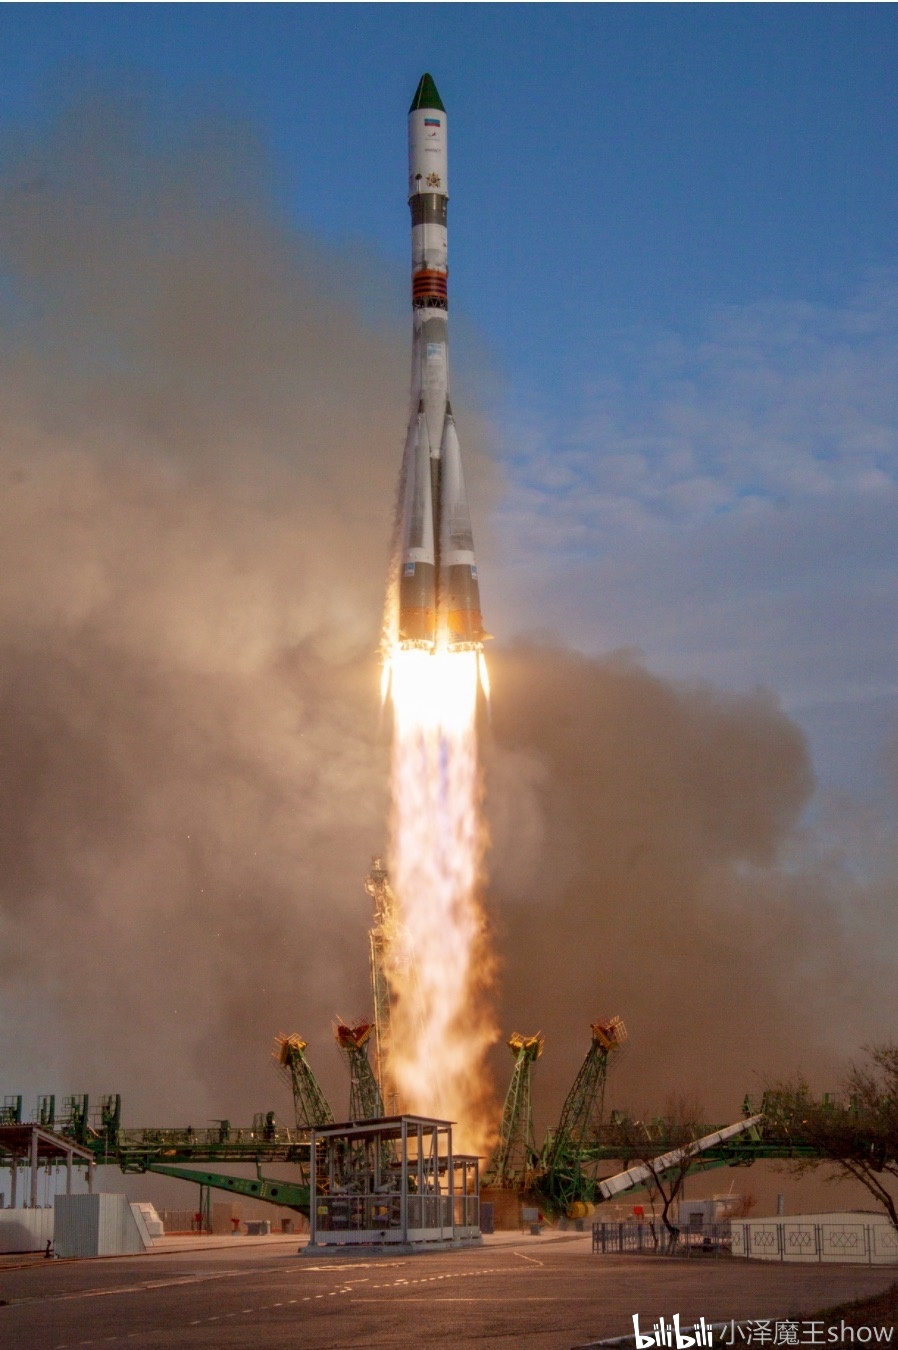 俄罗斯"联盟号"运载火箭发射成功!全球第一!发射现场